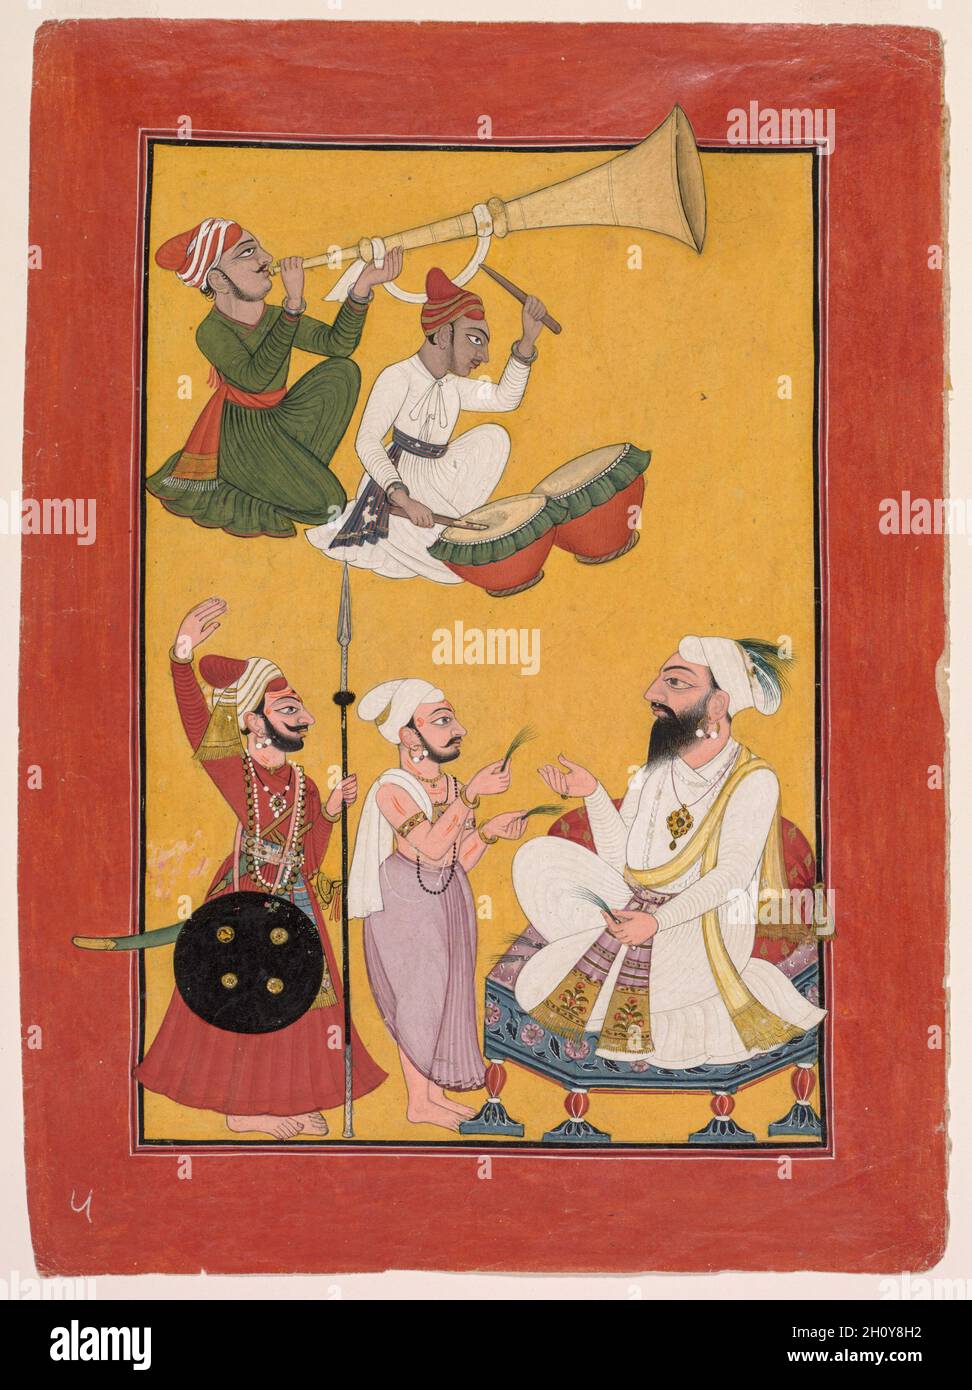 Celebrazioni della nascita di Krishna, da un Bhagavata Purana, c.. 1730. India settentrionale, Jammu e Kashmir, Mankot, XVIII secolo. Inchiostro e colori su carta; immagine: 22.9 x 15.2 cm (9 x 6 pollici); con tappetino: 49 x 36.3 cm (19 5/16 x 14 5/16 pollici). Il regno indù di Mankot ai piedi delle colline occidentali dell'Himalaya sviluppò uno stile di pittura audace in cui figure in stretto profilo si distinguono contro un intenso terreno giallo. I musicisti annunciano con entusiasmo l'arrivo del neonato Krishna nel villaggio di Vraj, dove era un neonato broughta per crescere fino alla maturità in sicurezza tra i cowherders. Era se Foto Stock